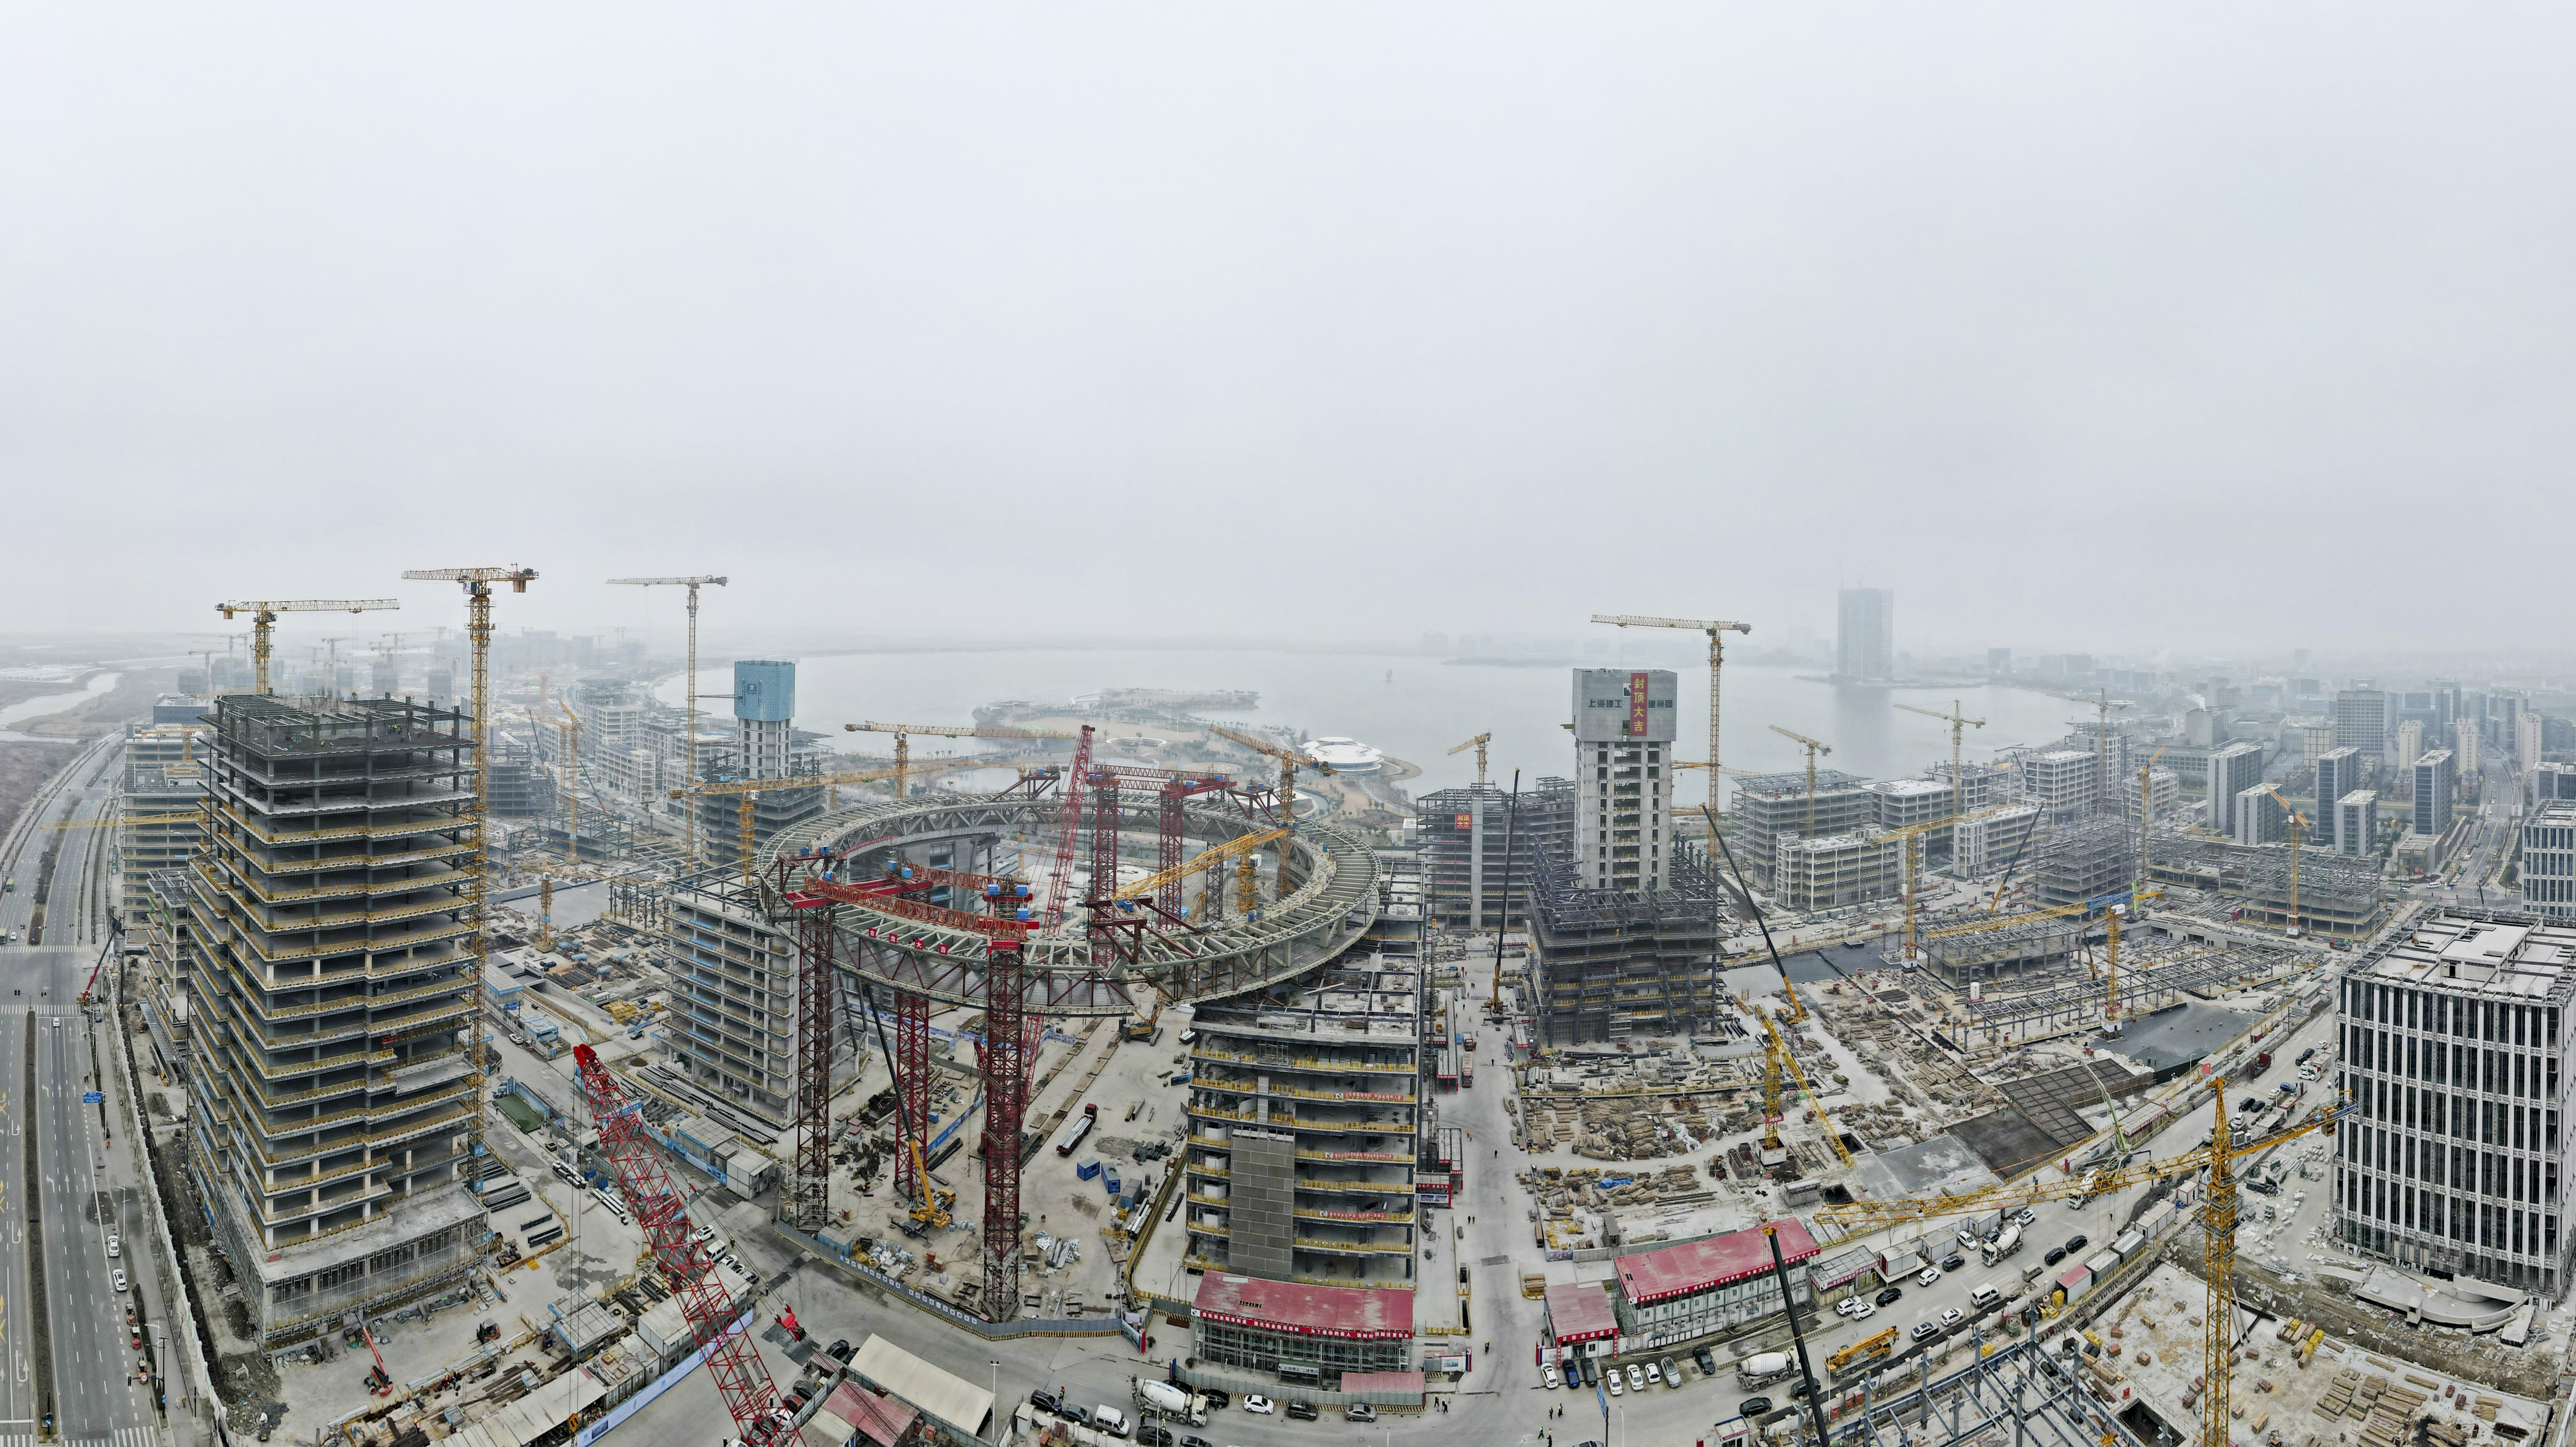 空中俯瞰建设中的上海临港新片区滴水湖金融湾项目。 新华社记者 方喆 摄.jpeg